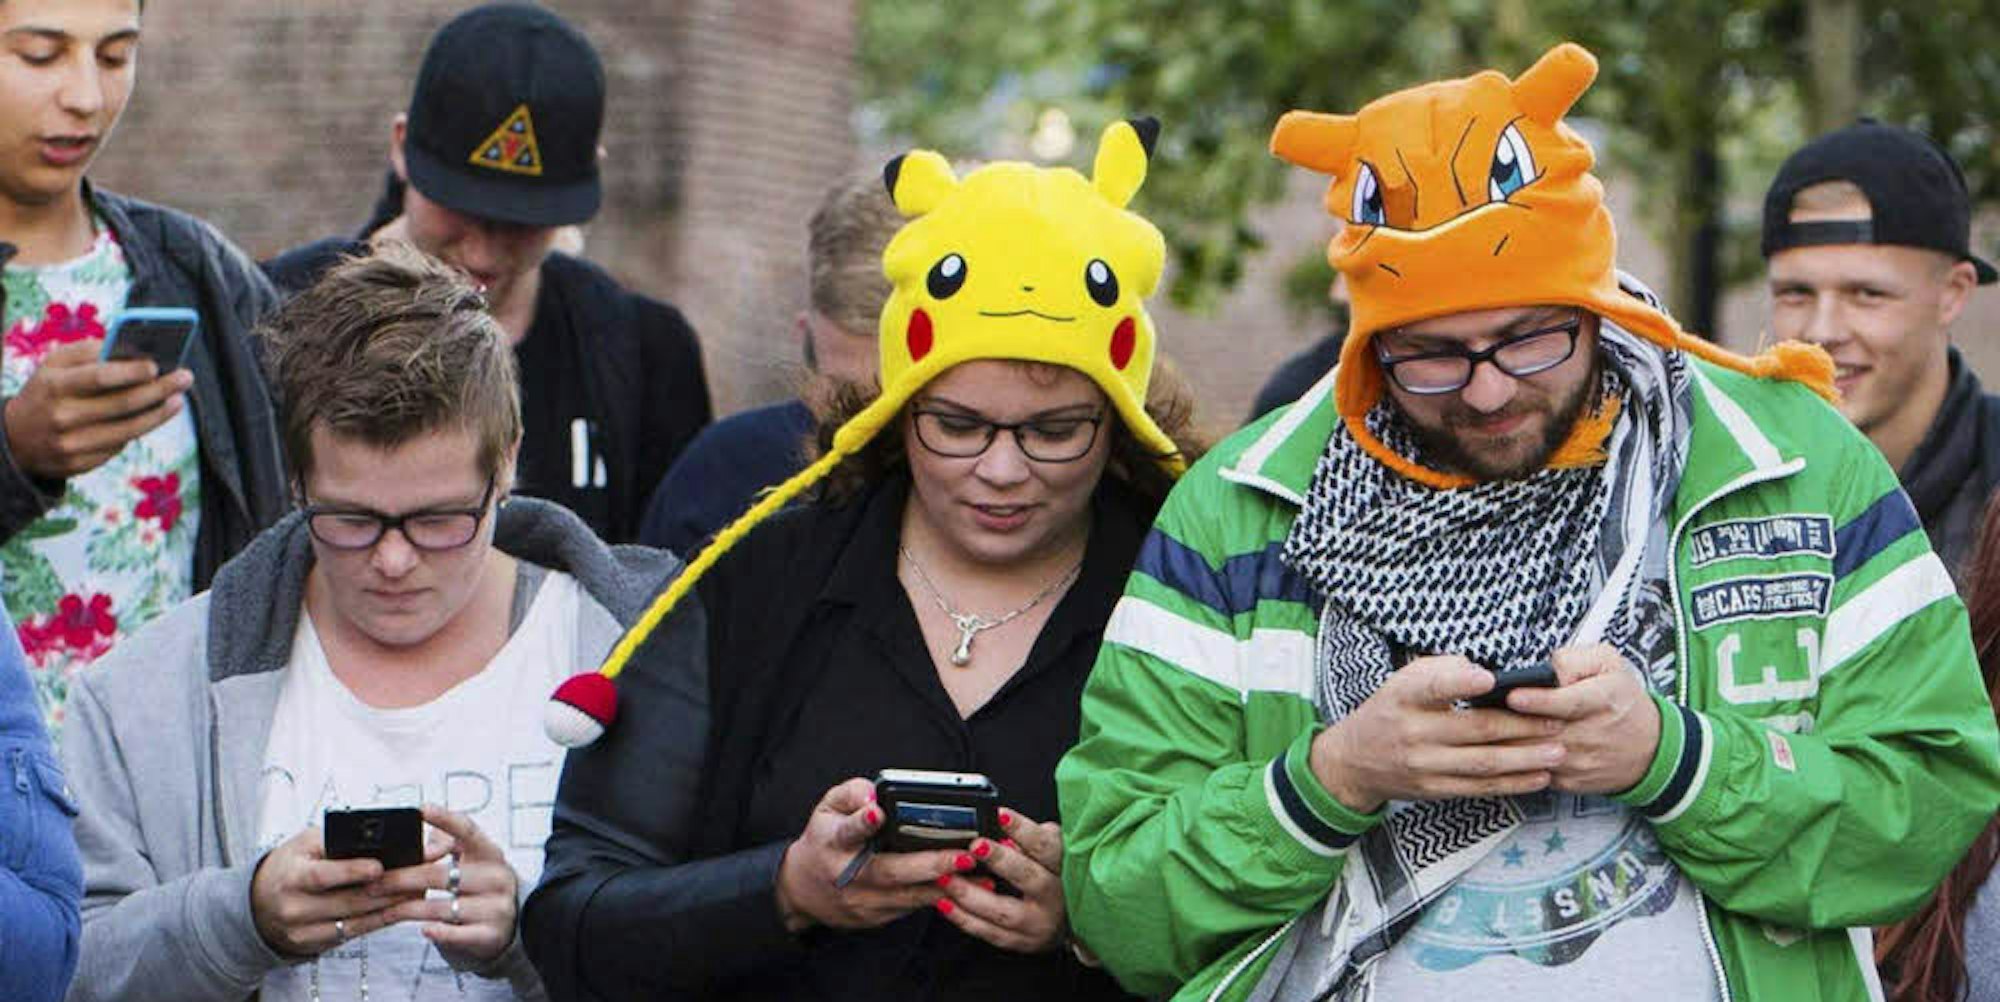 Nur aufs Handy statt auf den Verkehr zu achten kann gefährlich sein – nicht nur beim Pokémon-Spiel.